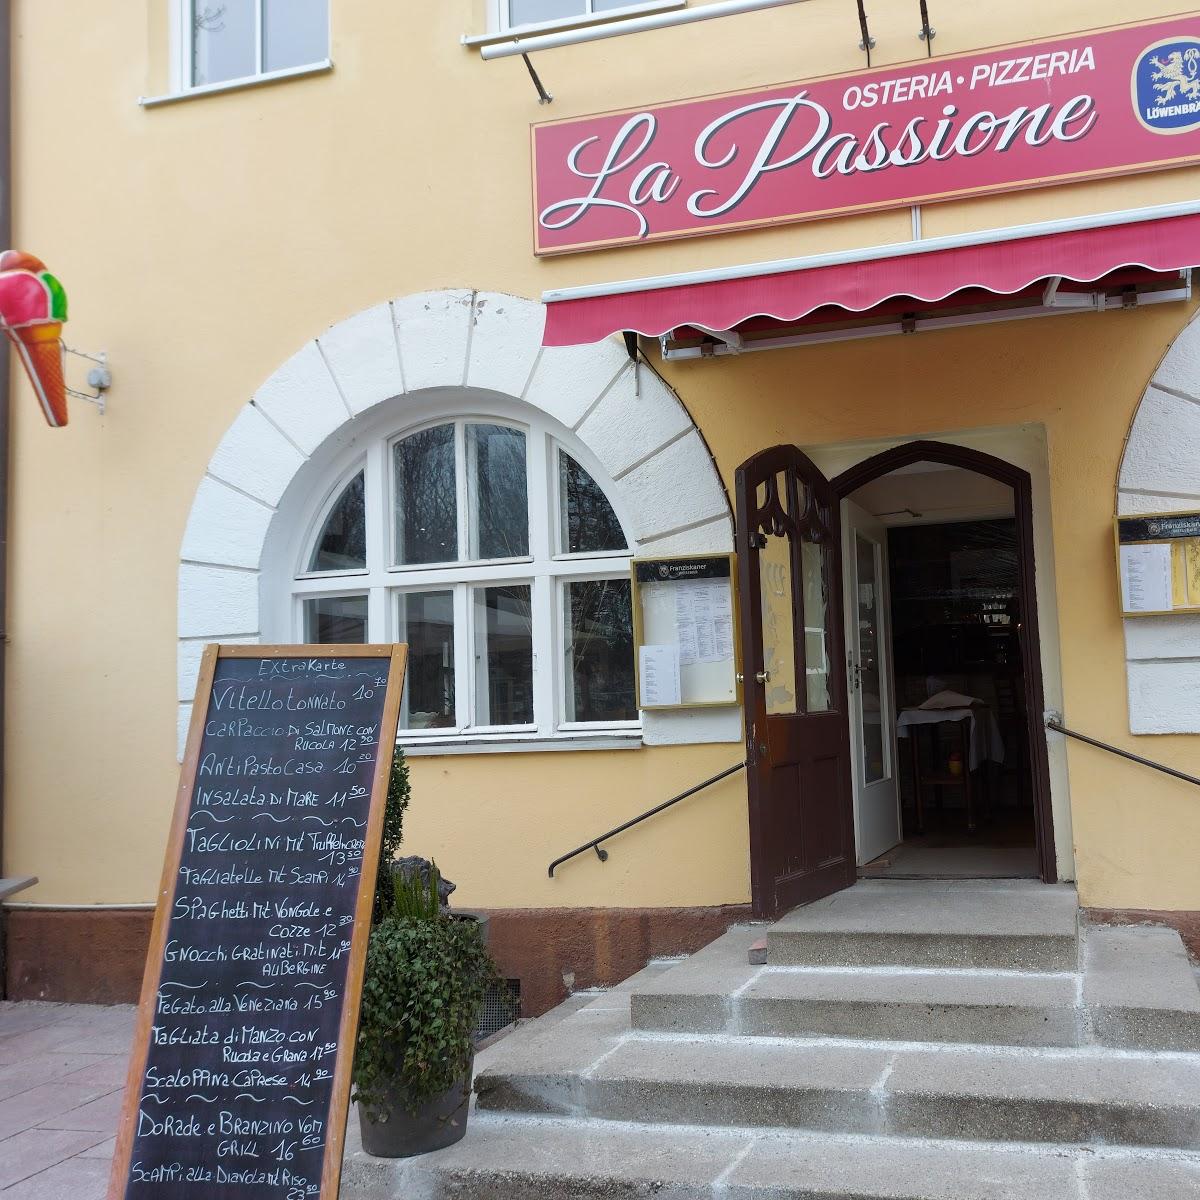 Restaurant "La Passione" in München